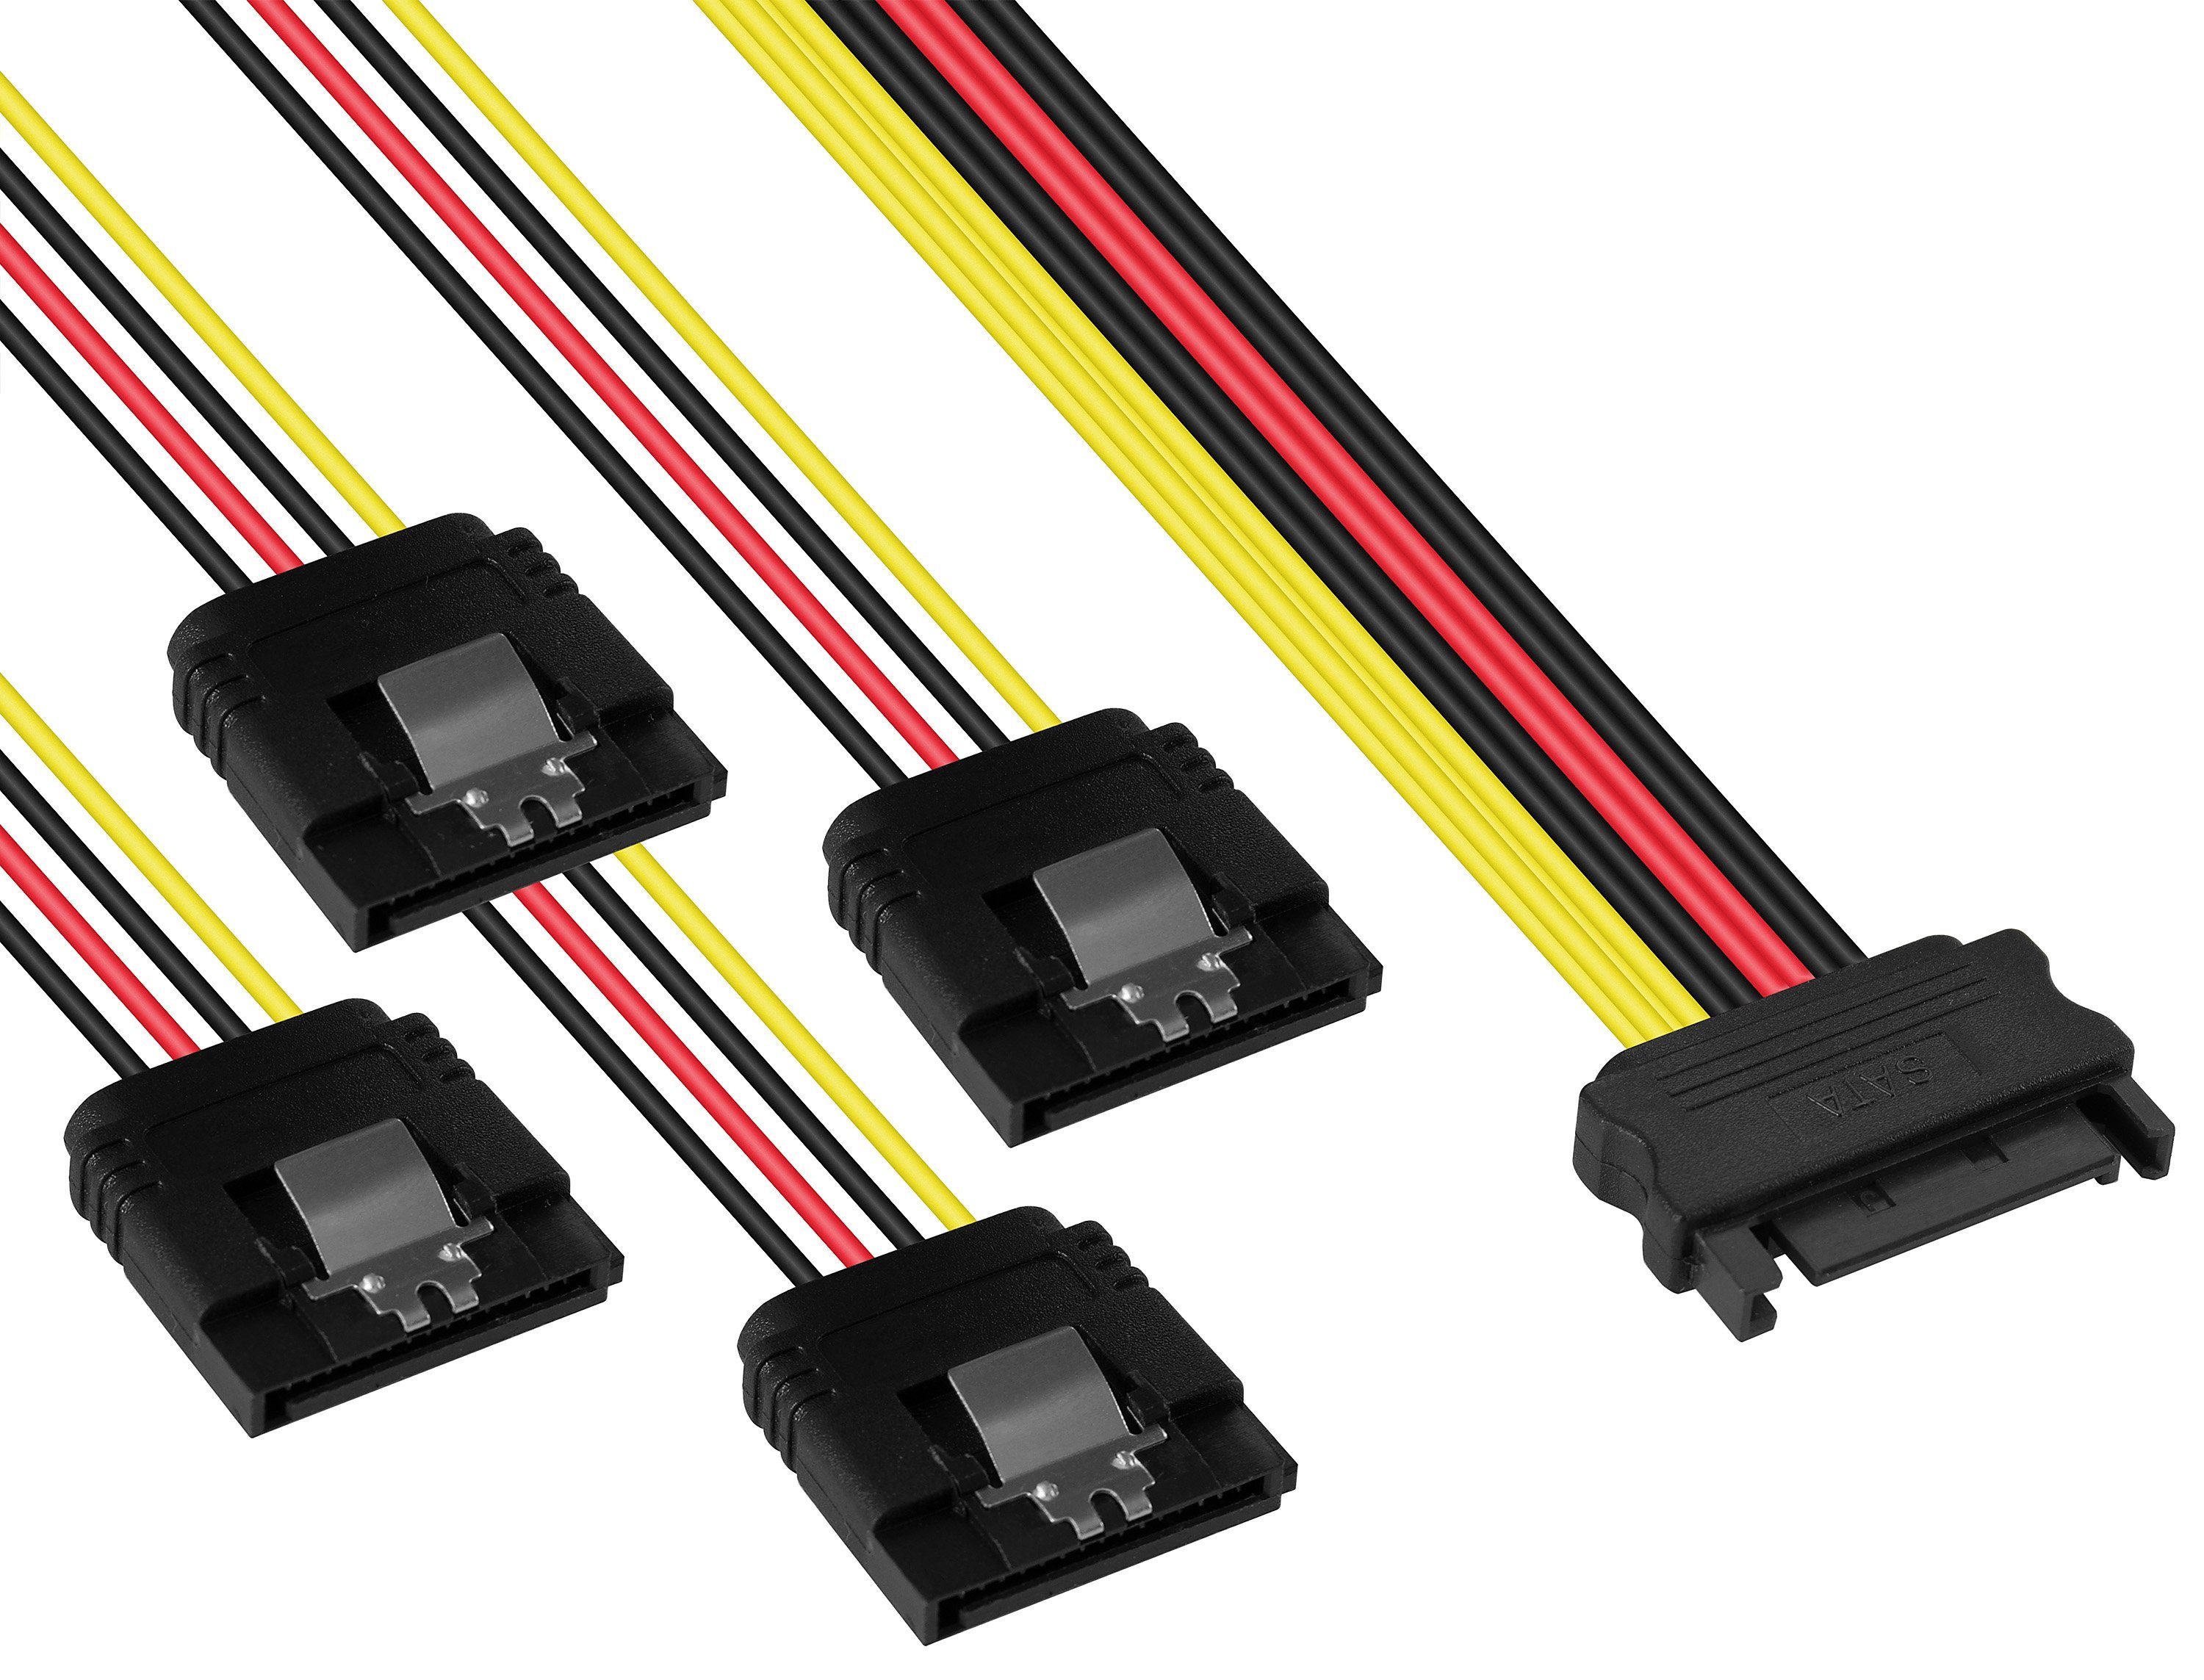 Poppstar SATA Kabel gerade/gerade SSD, HDD, Festplatte, auf Stecker Stromkabel, (4-18-22-26,5cm) 14/18/22/25cm Stromkabel (m) Motherboard 4x Verteiler für Sata Adapter 4-fach 1x (w) Buchse Splitter